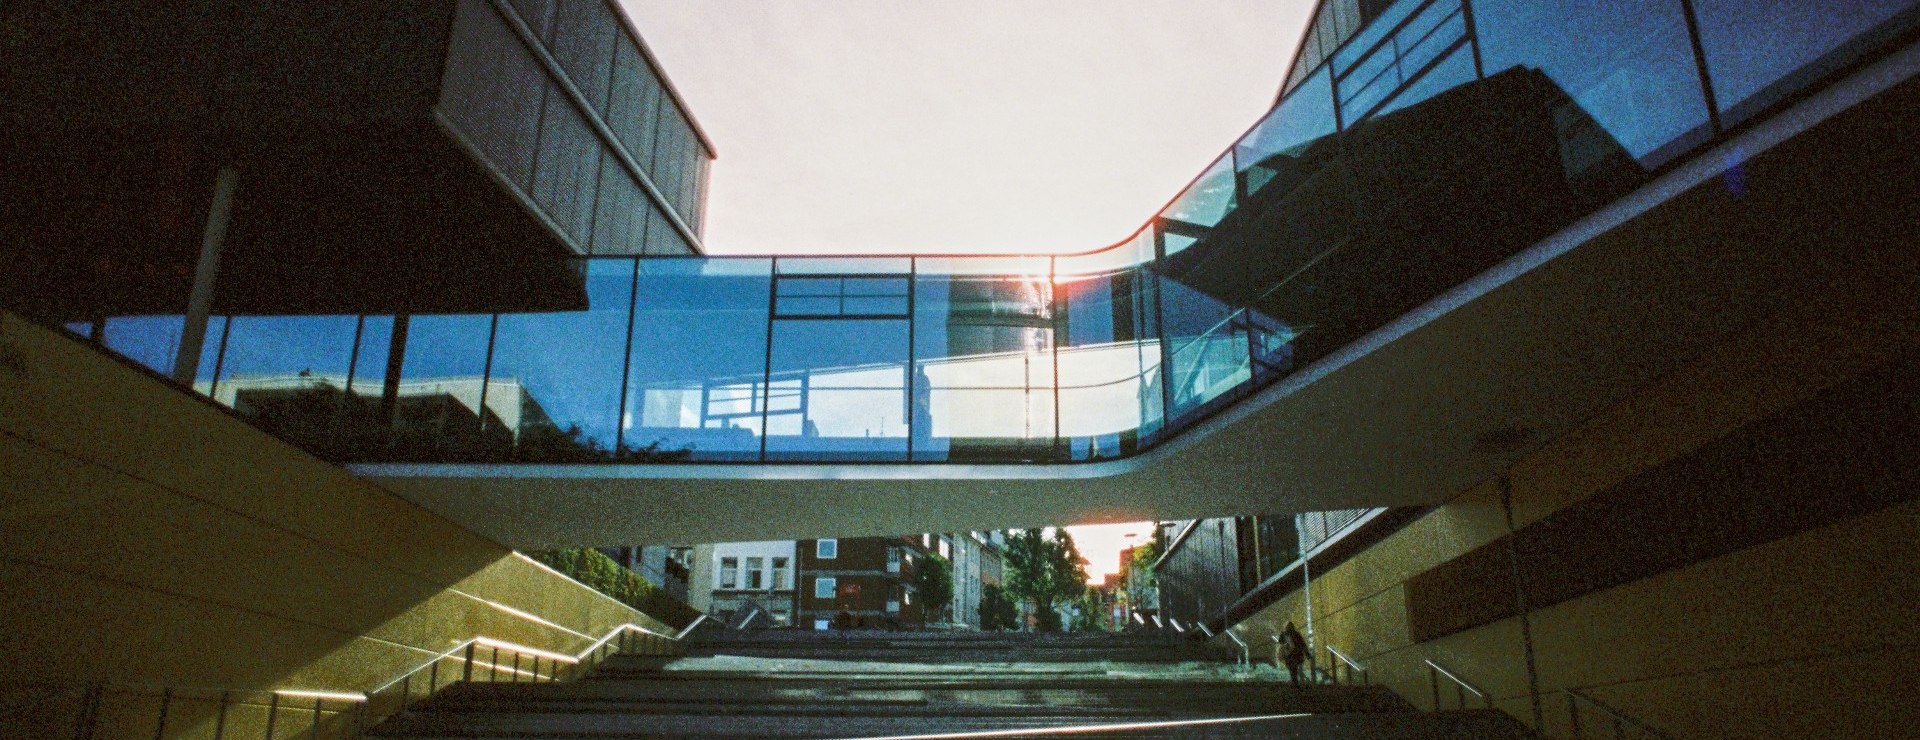 Generali insurance building, © Johannes Höhn